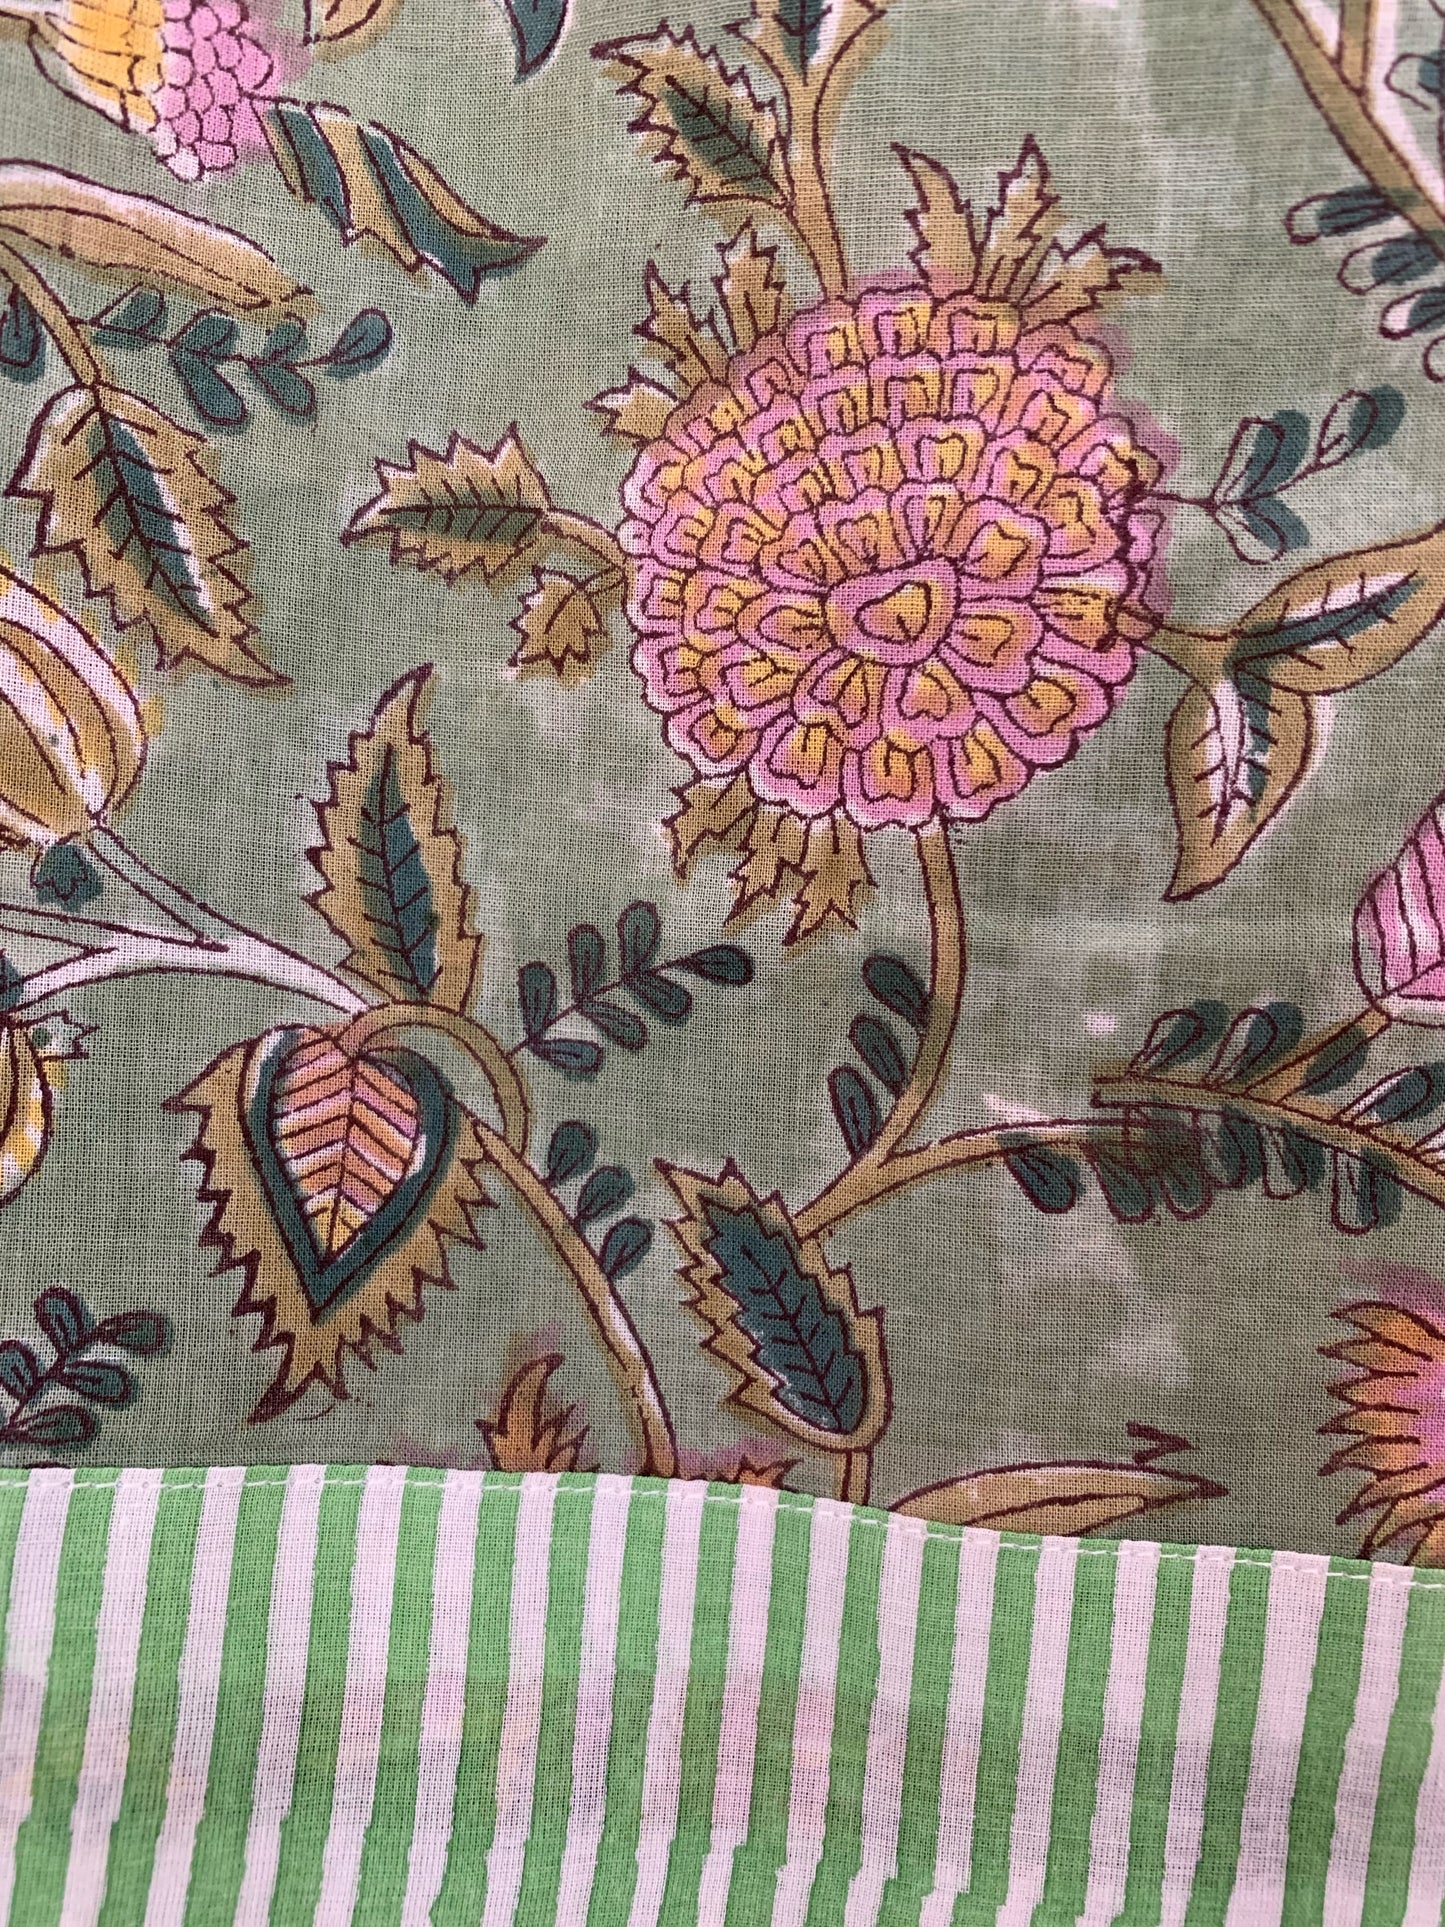 SET regalo · Bata kimono y bolsa de aseo juego · Algodón 100% puro estampado block print artesanal en India · Verde morado